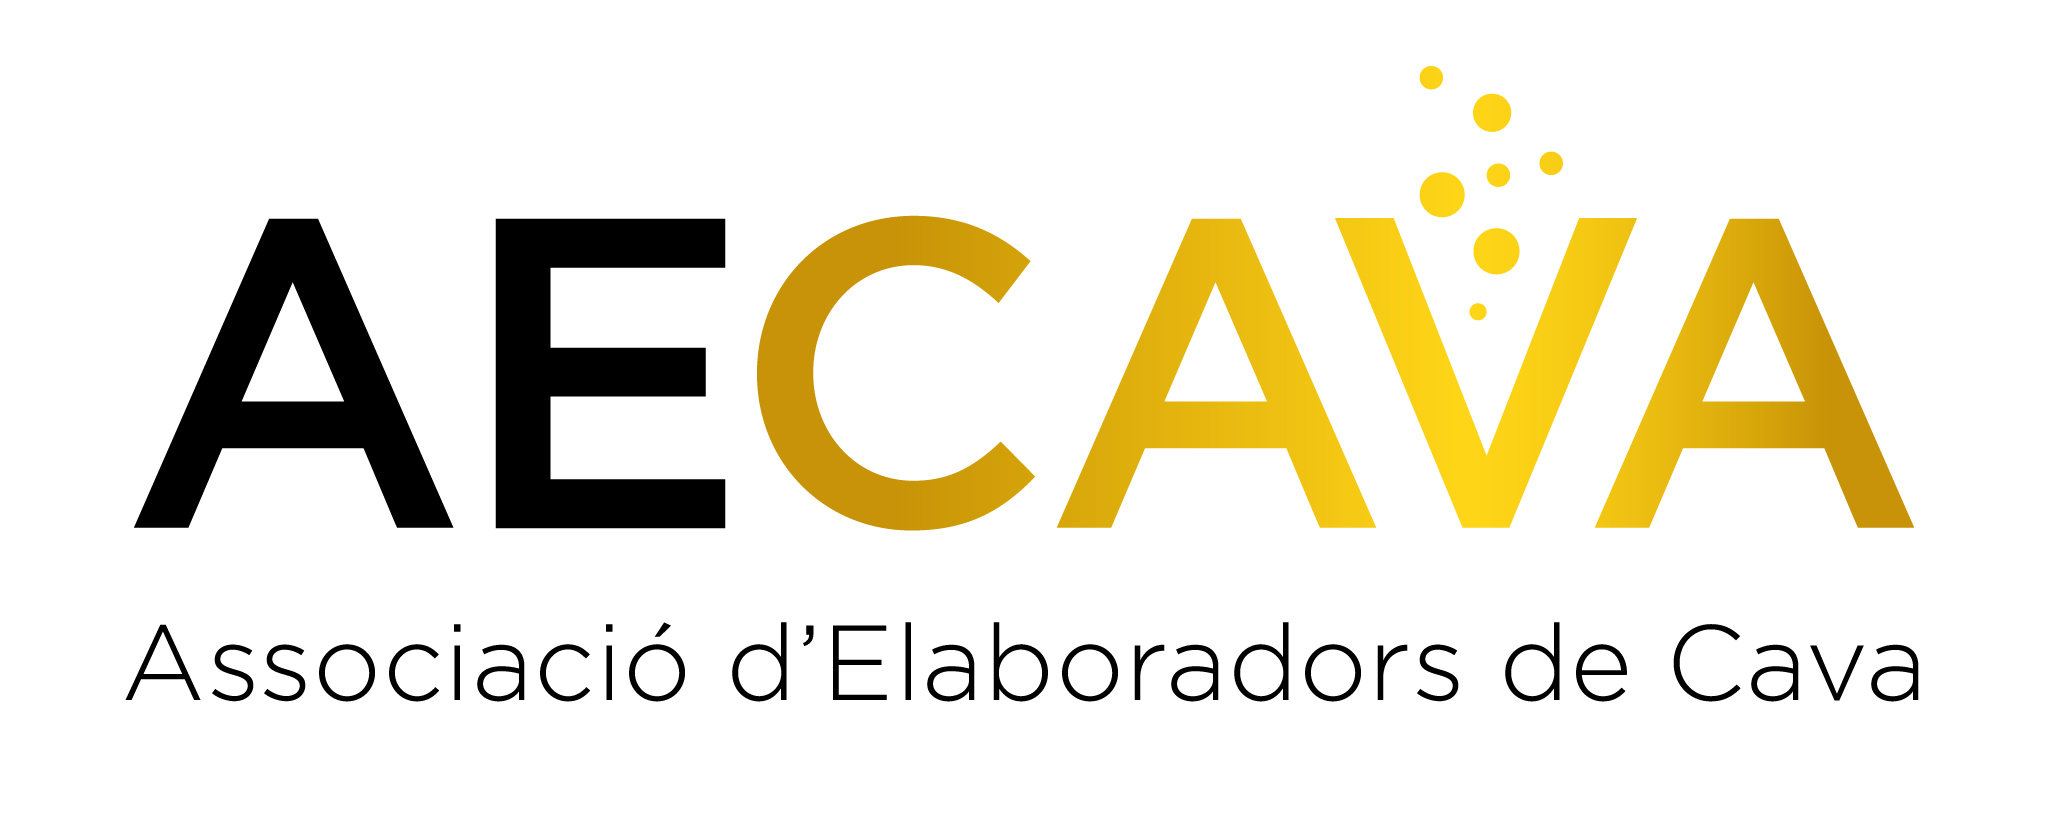 AECAVA – Associació d’Elaboradors de Cava